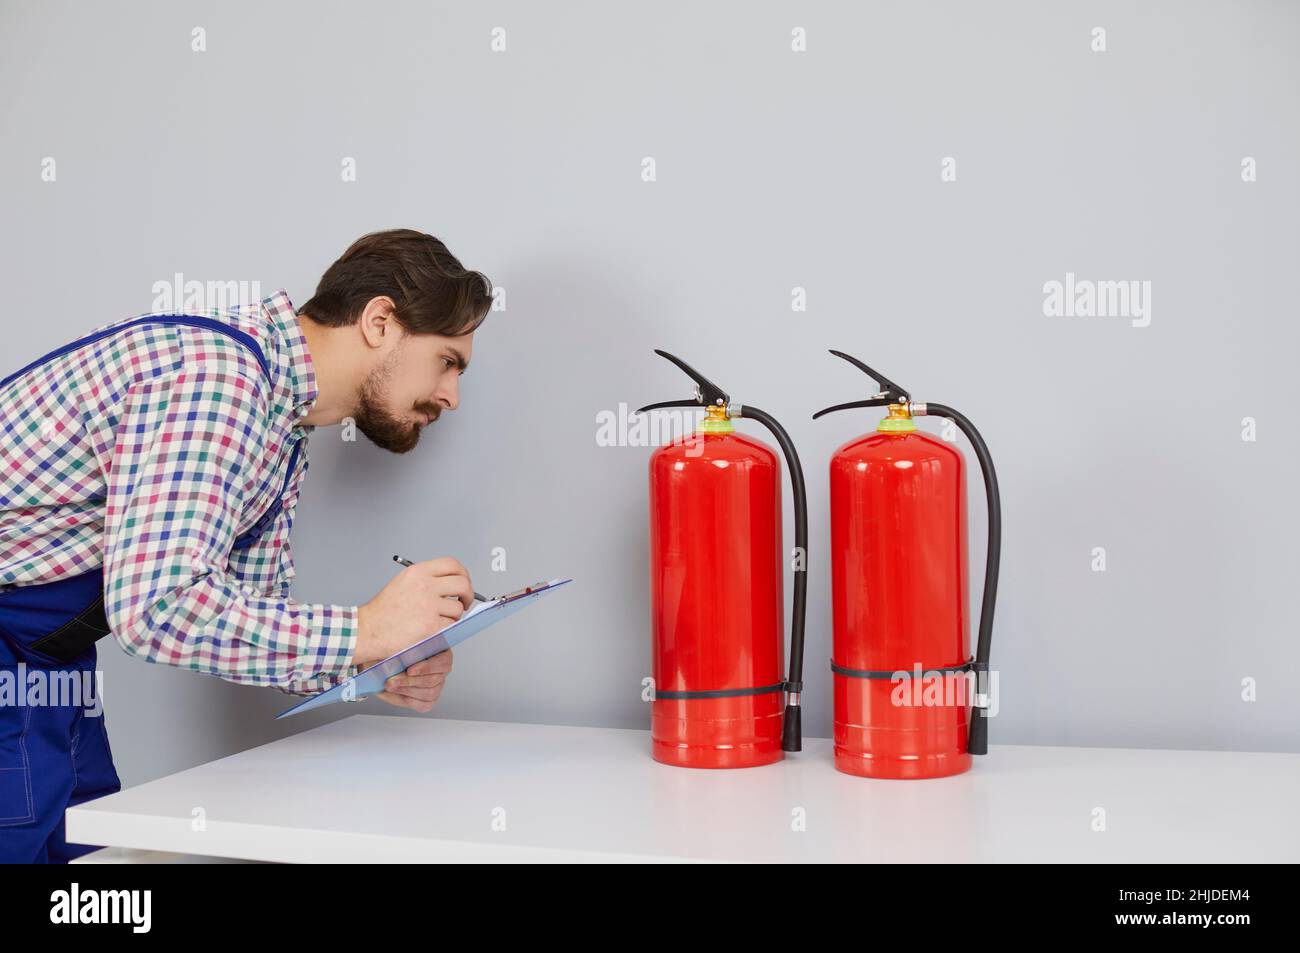 Juguete de extinguidor de incendios Fotografía de stock - Alamy